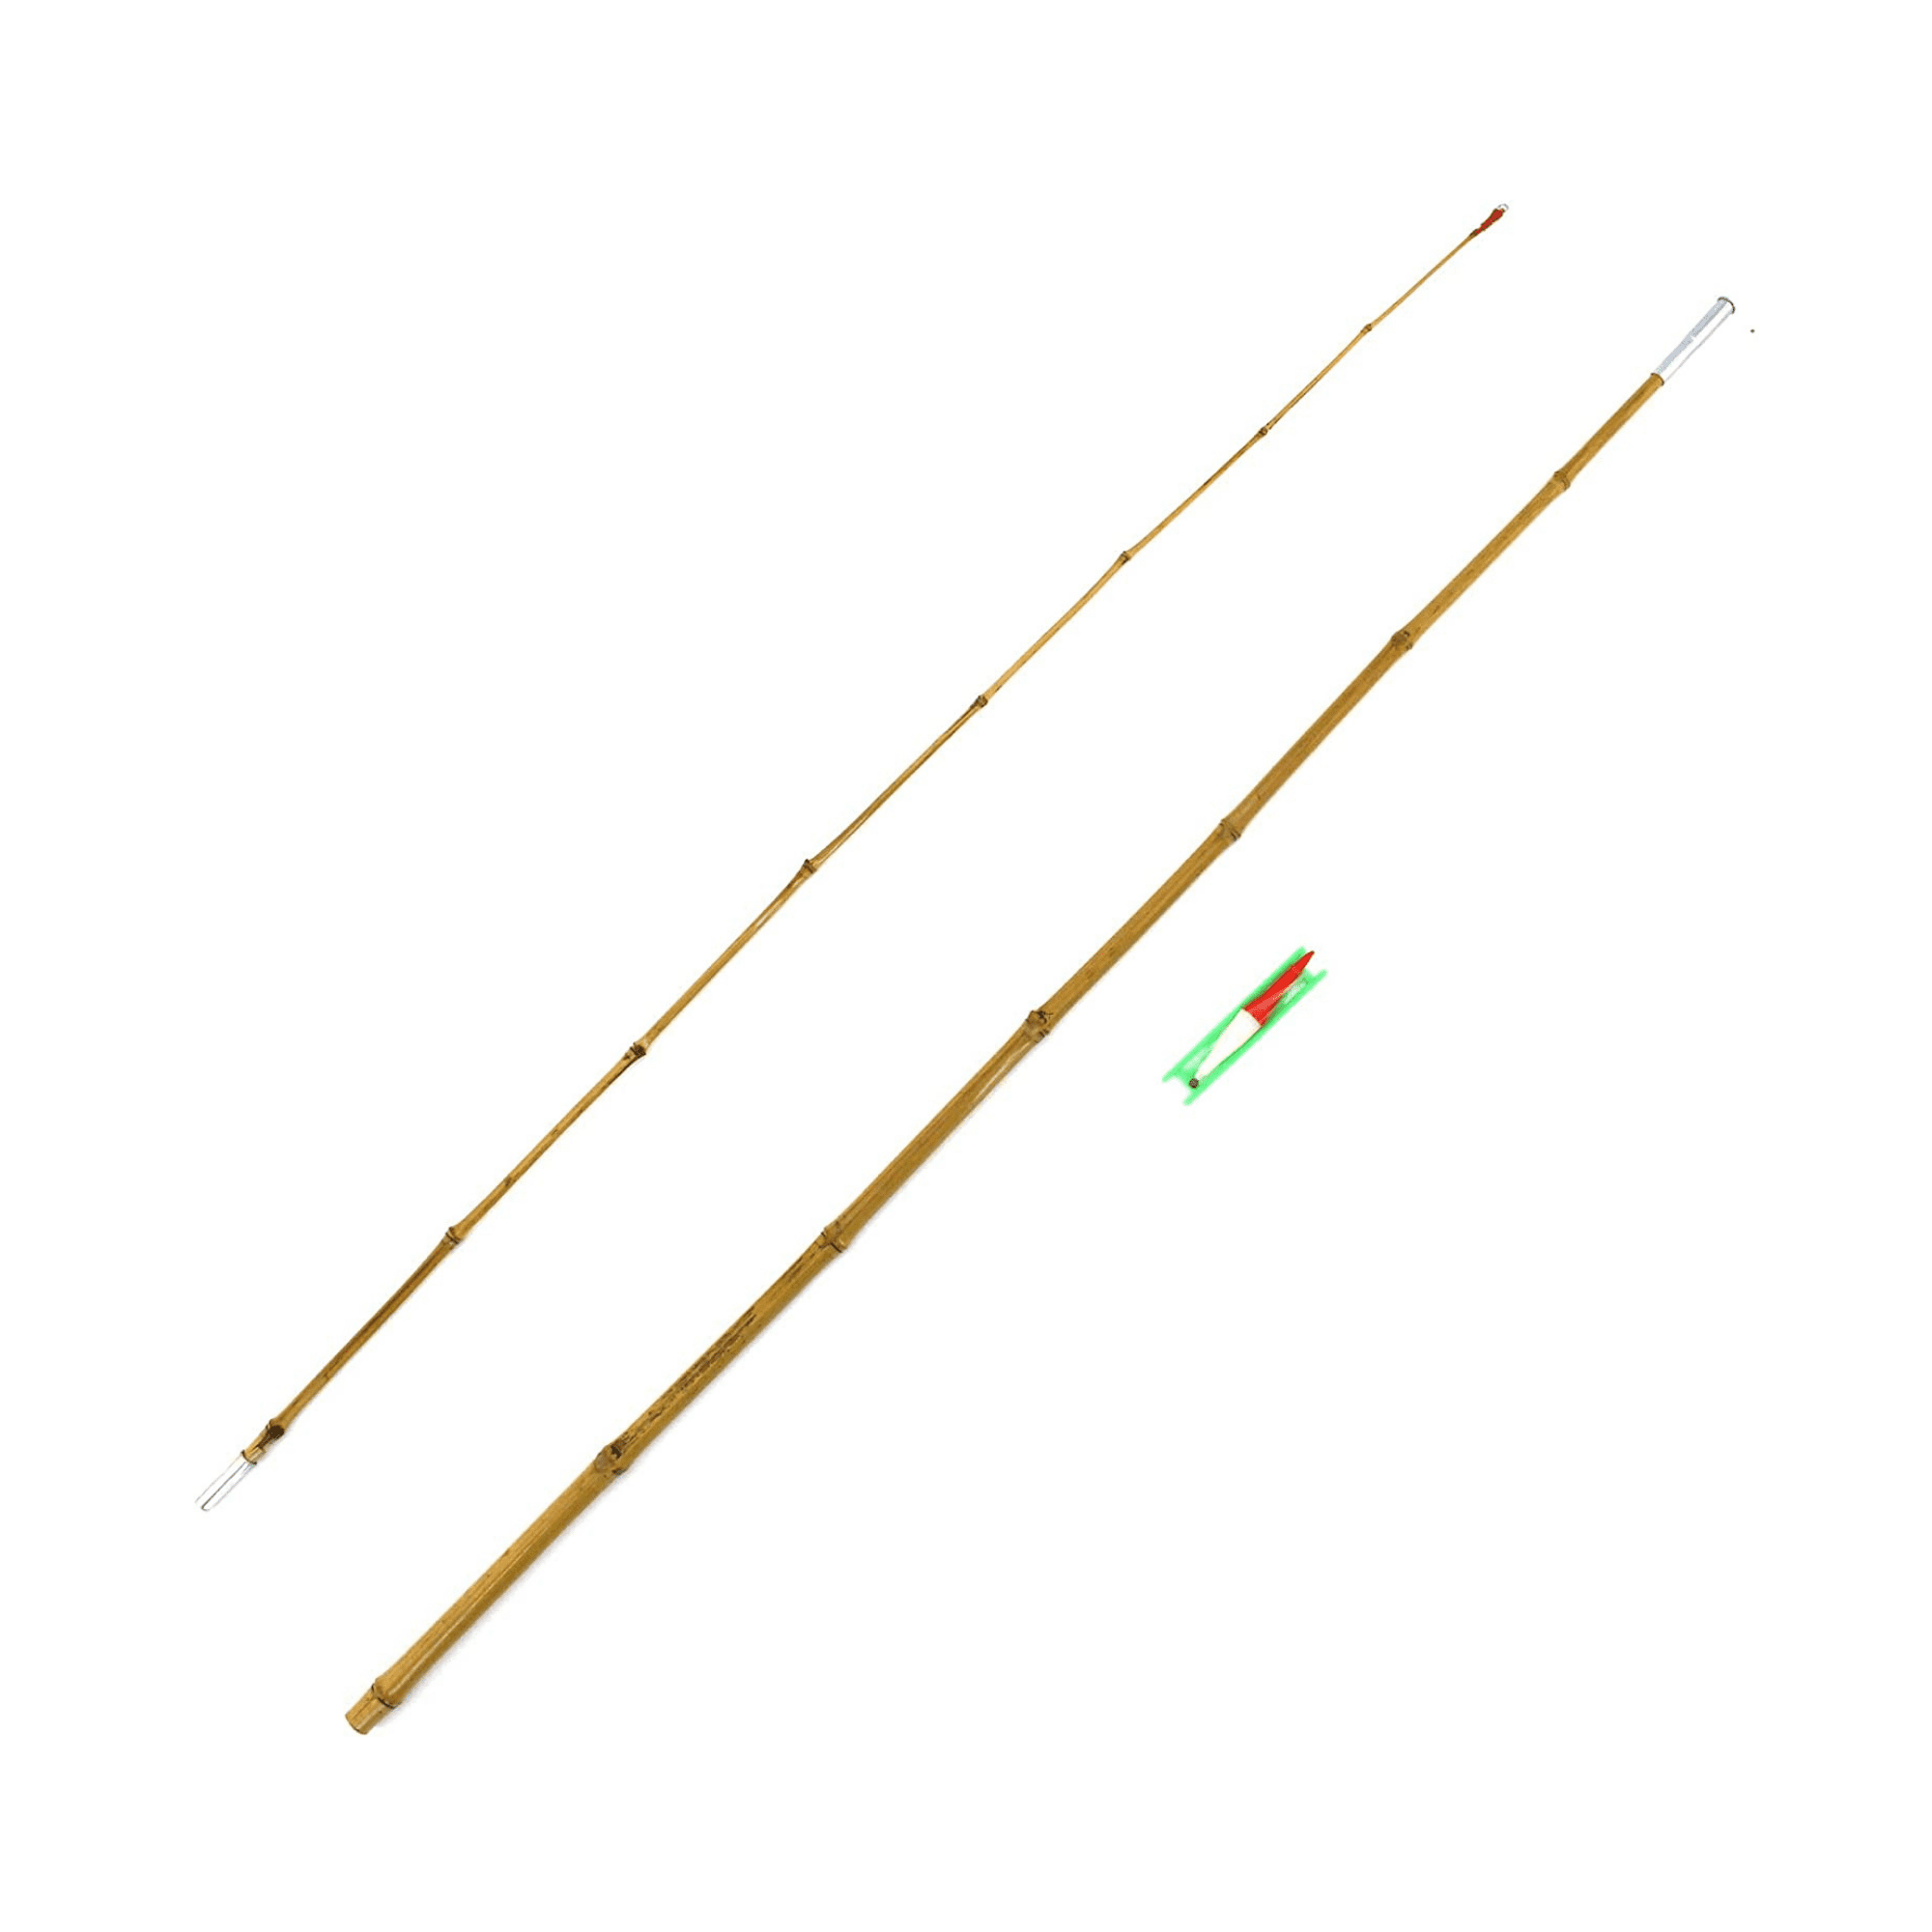 Bamboo Cane Fishing Pole w/ Bobber, Hook, Line, Sinker - Vintage